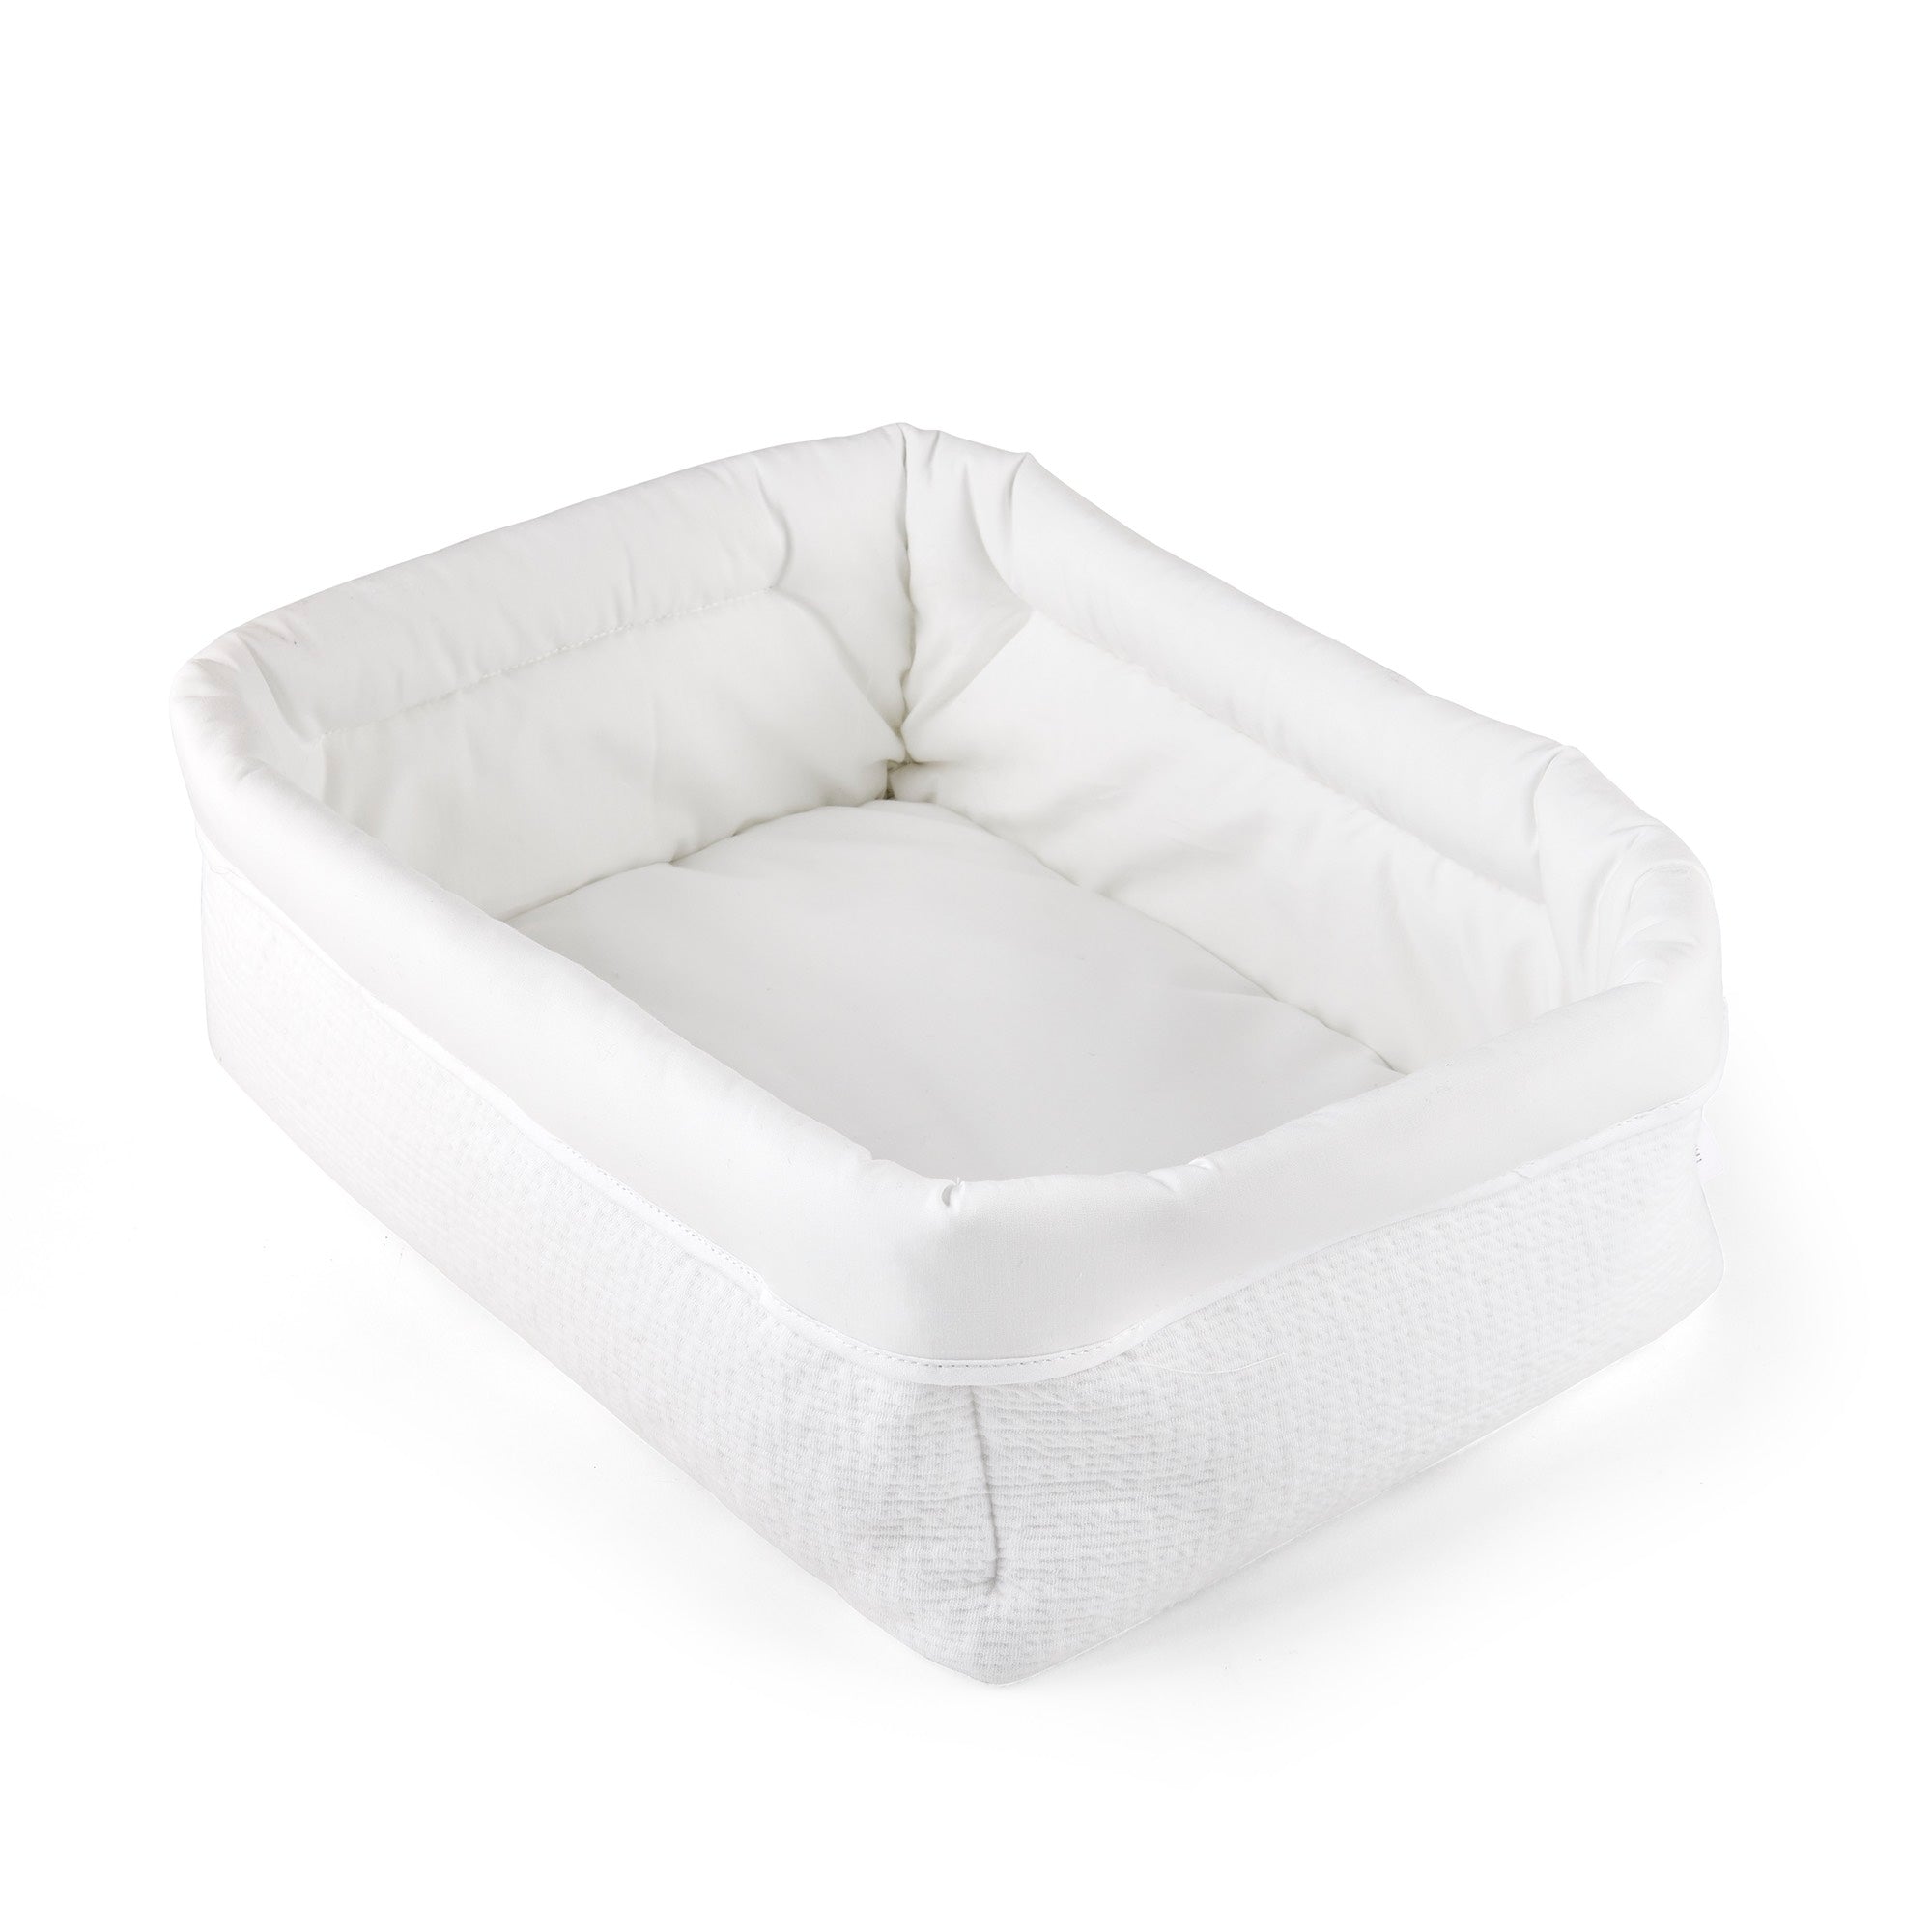 Theophile & Patachou Baby Rectangular Toilet Basket - Cotton White